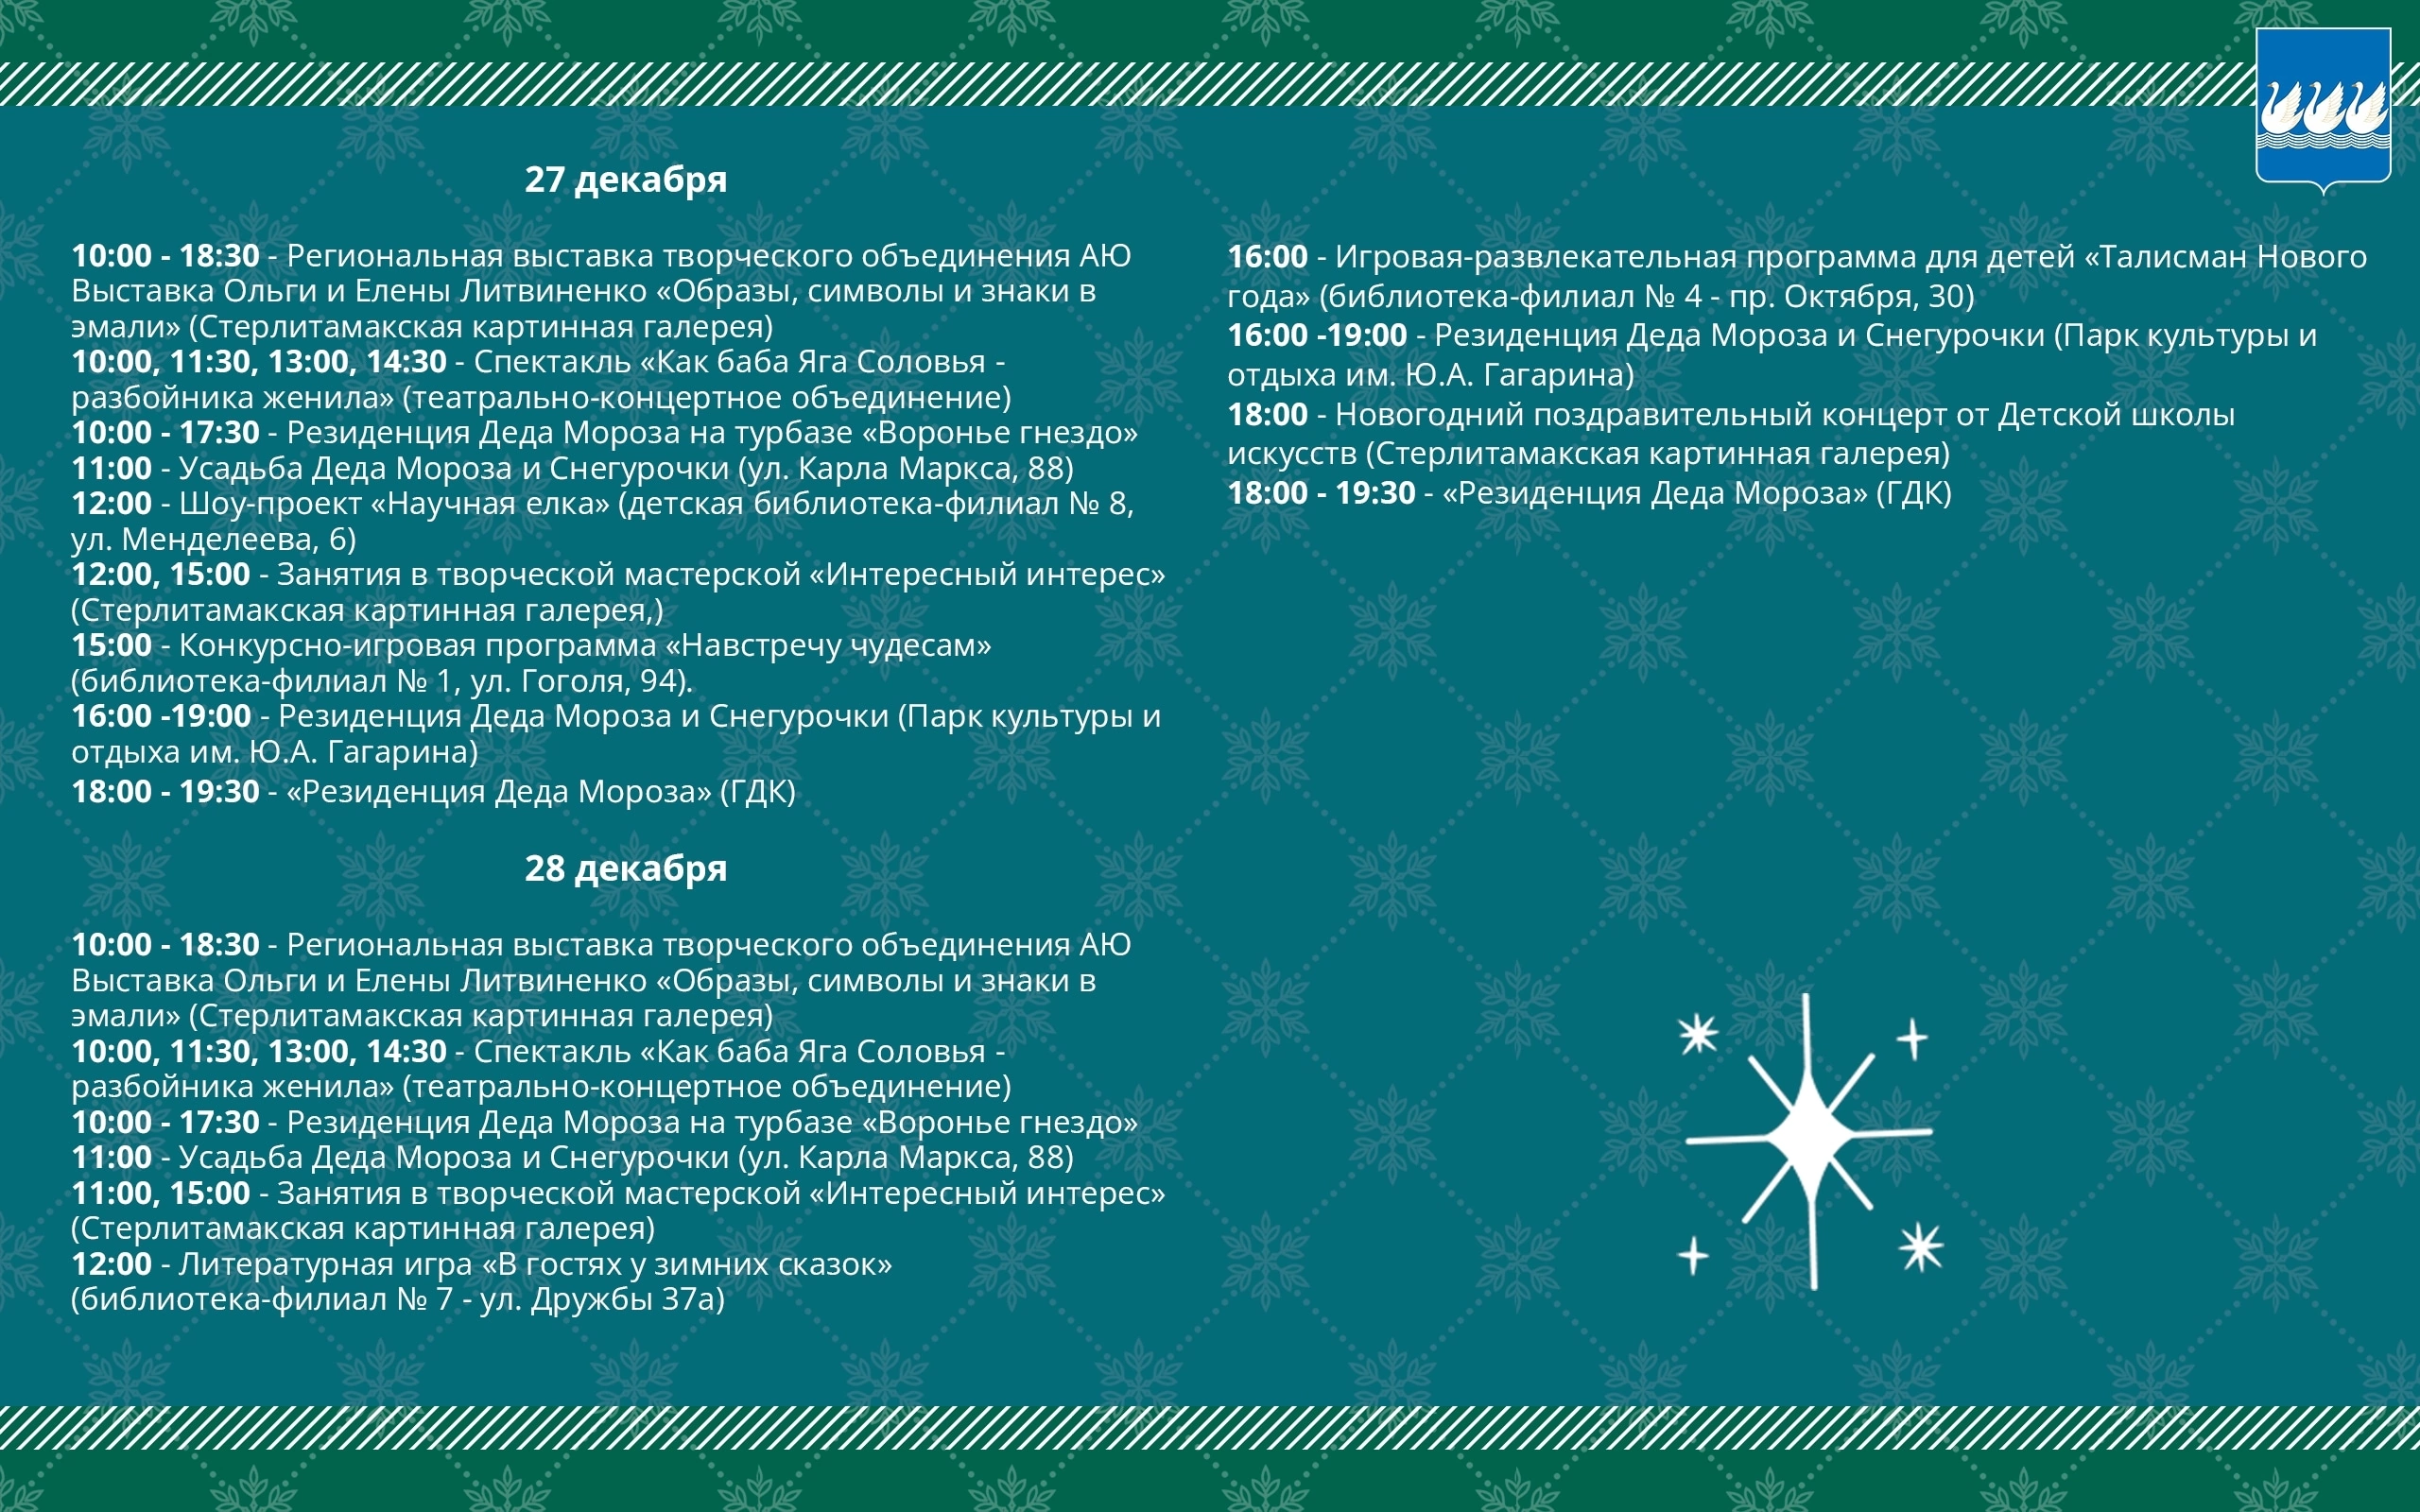 В Стерлитамаке запланирован ряд мероприятий, посвящённых Новому году